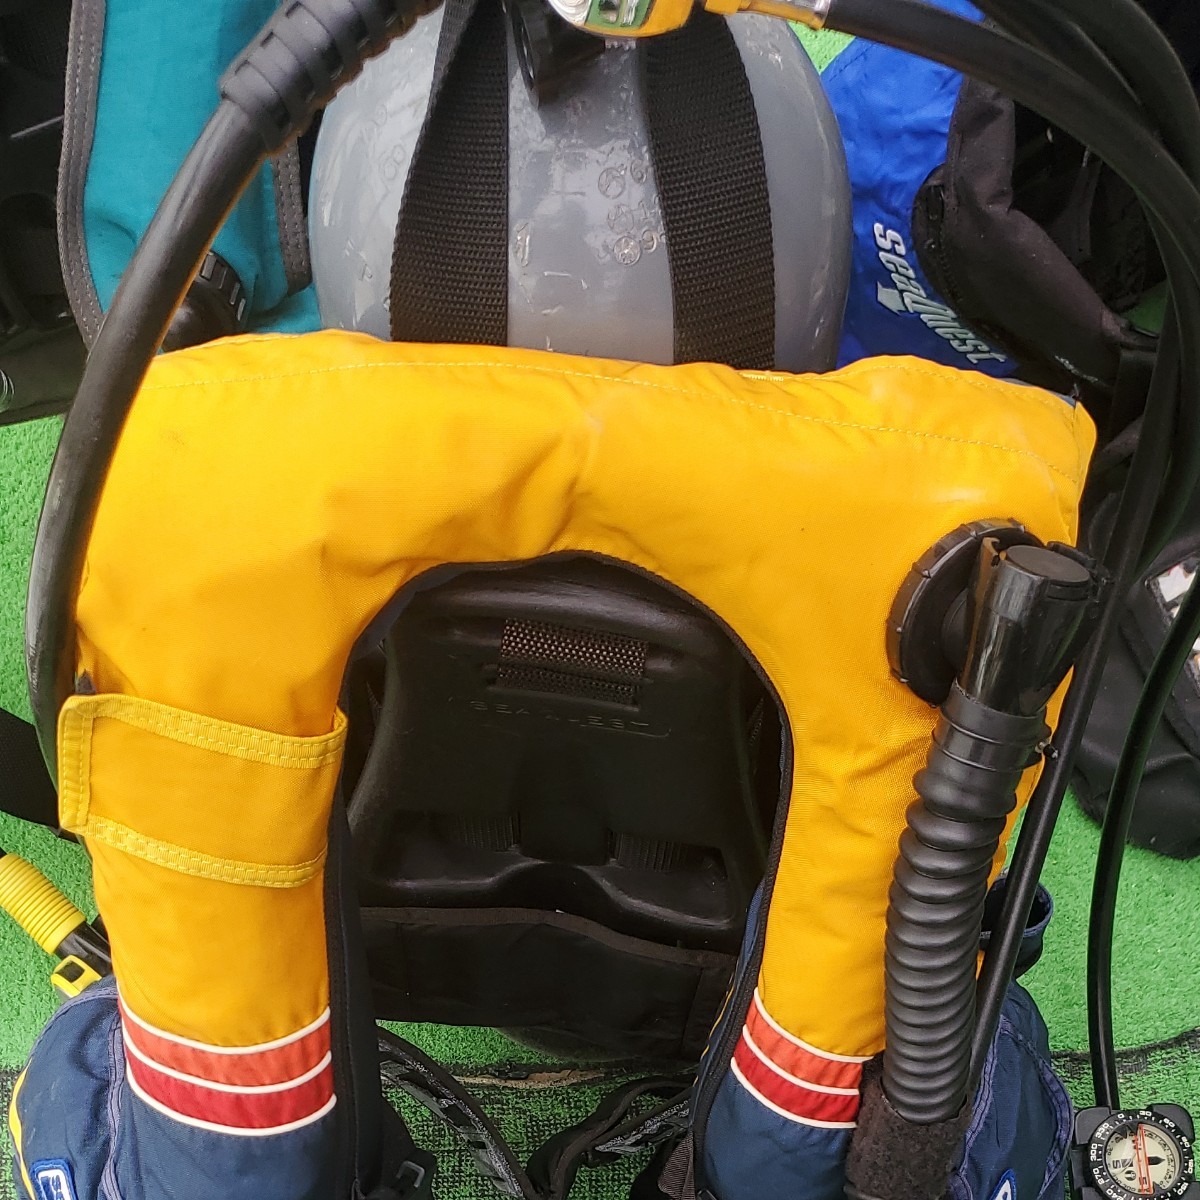 (211A) スキューバダイビング用 BCジャケットのみ 耐圧確認テスト済み エアー抜け微妙にあり  正常動作範囲内